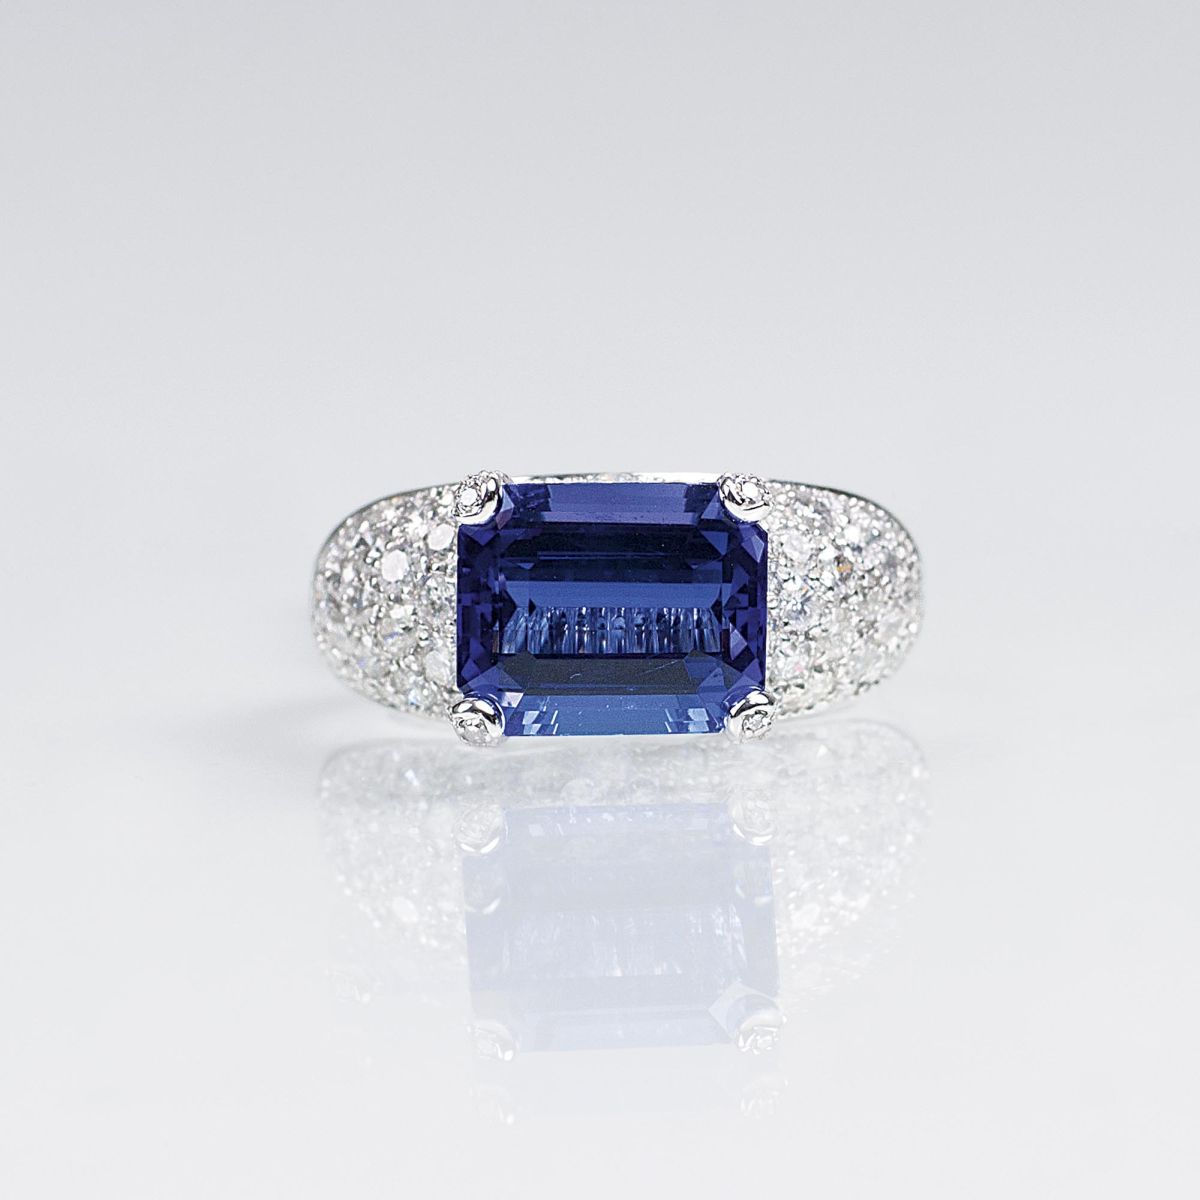 A fine Tanzanite Diamond Ring